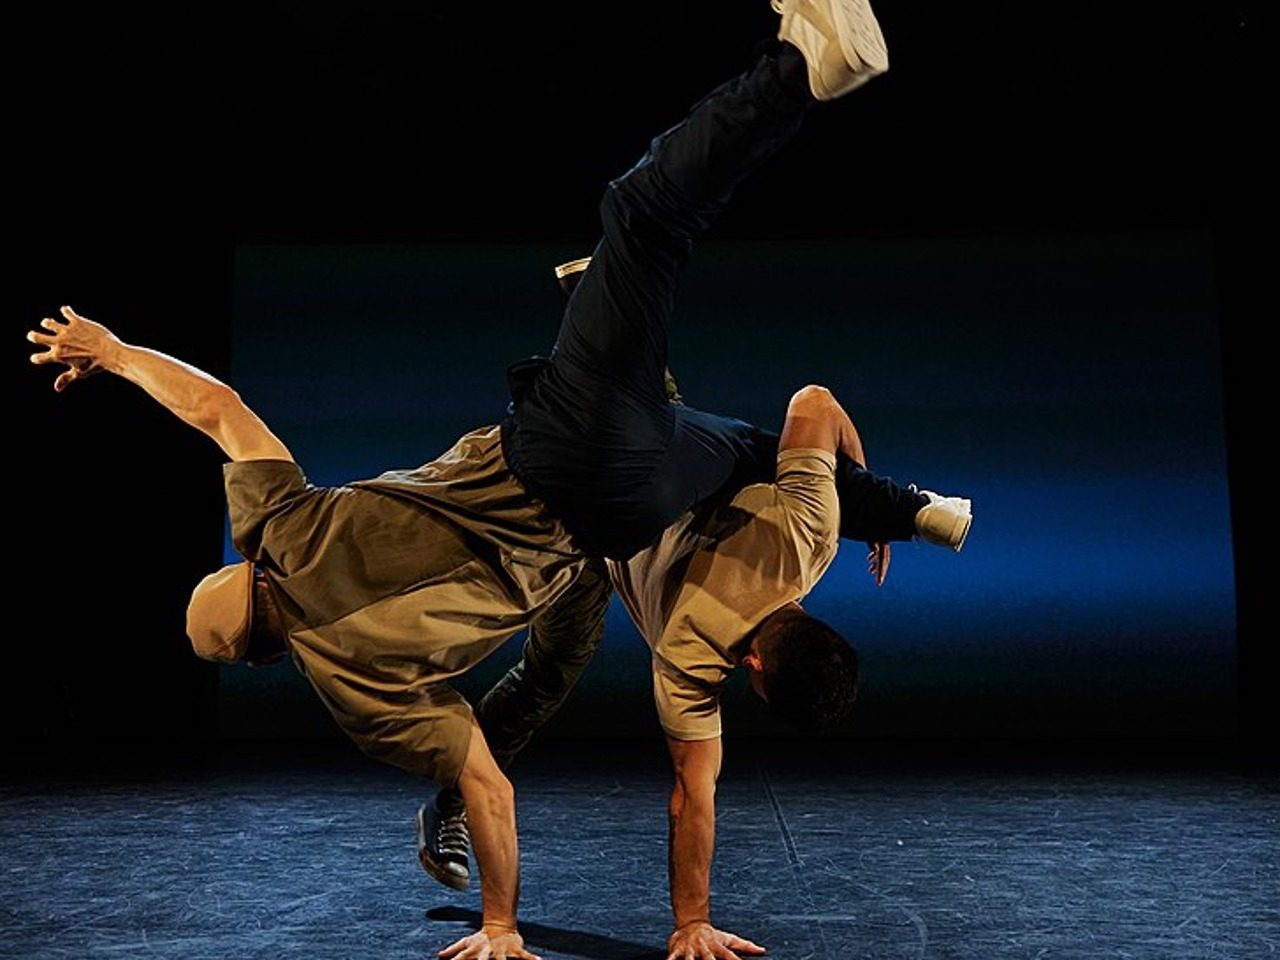 Photo prise par Jerick Collantes via Wikimedia Commons. Lors du spectacle « In My Body » , une production de danse par Bboyizm, choregraphié par Crazy Smooth. Interprètes (gauche à droit) : Vibz, JC Fresh. Photo du 18/11/2021.